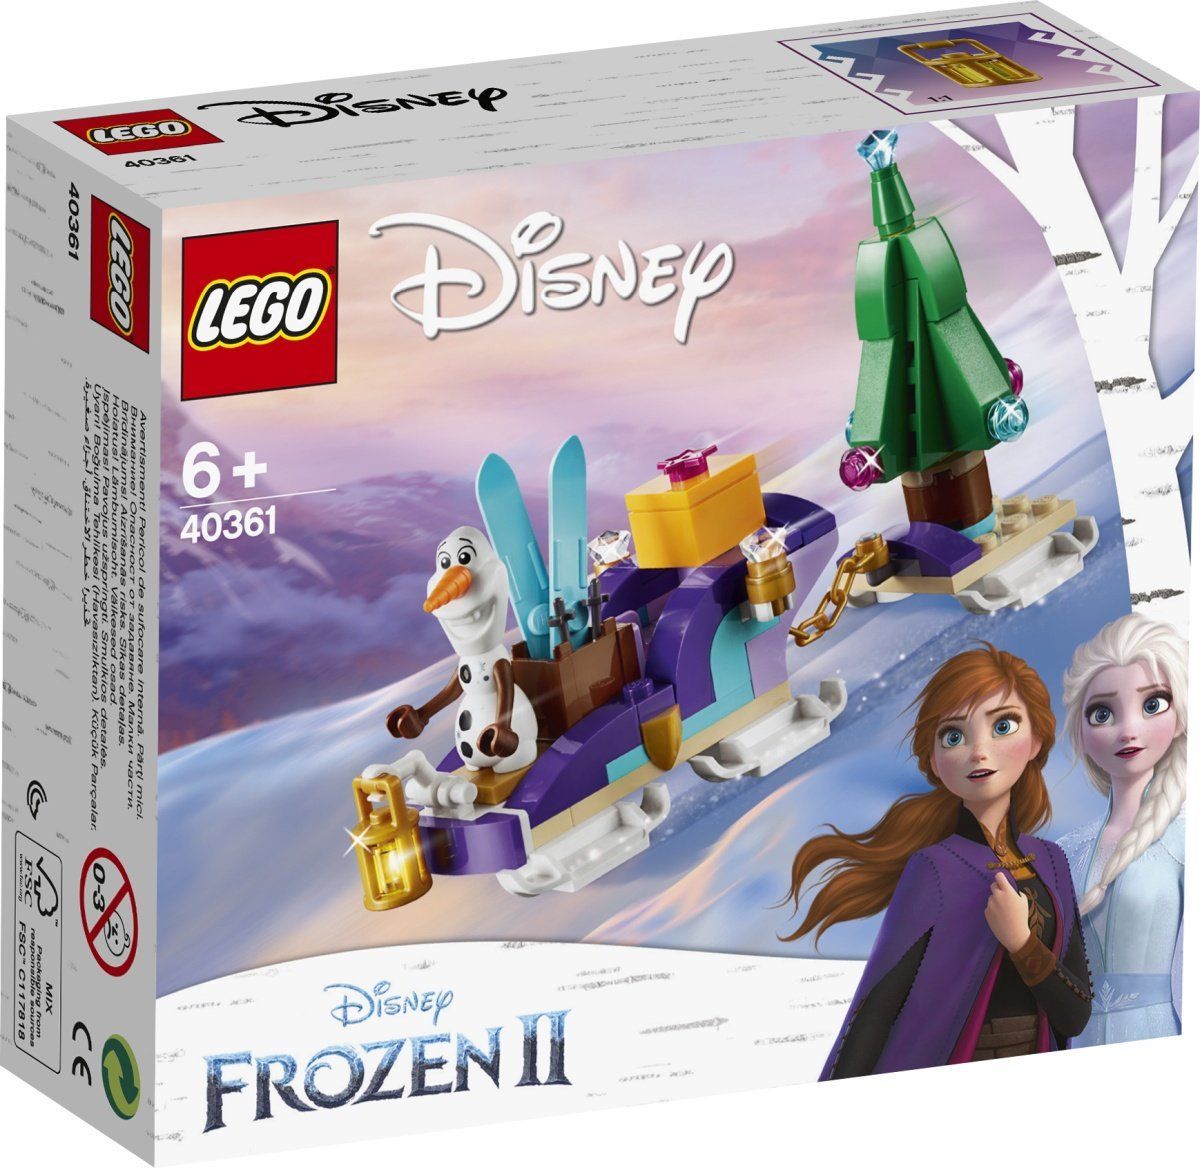 LEGO Disney Frozen 2: Olafs Schlitten (40361) ab Montag als Zugabe